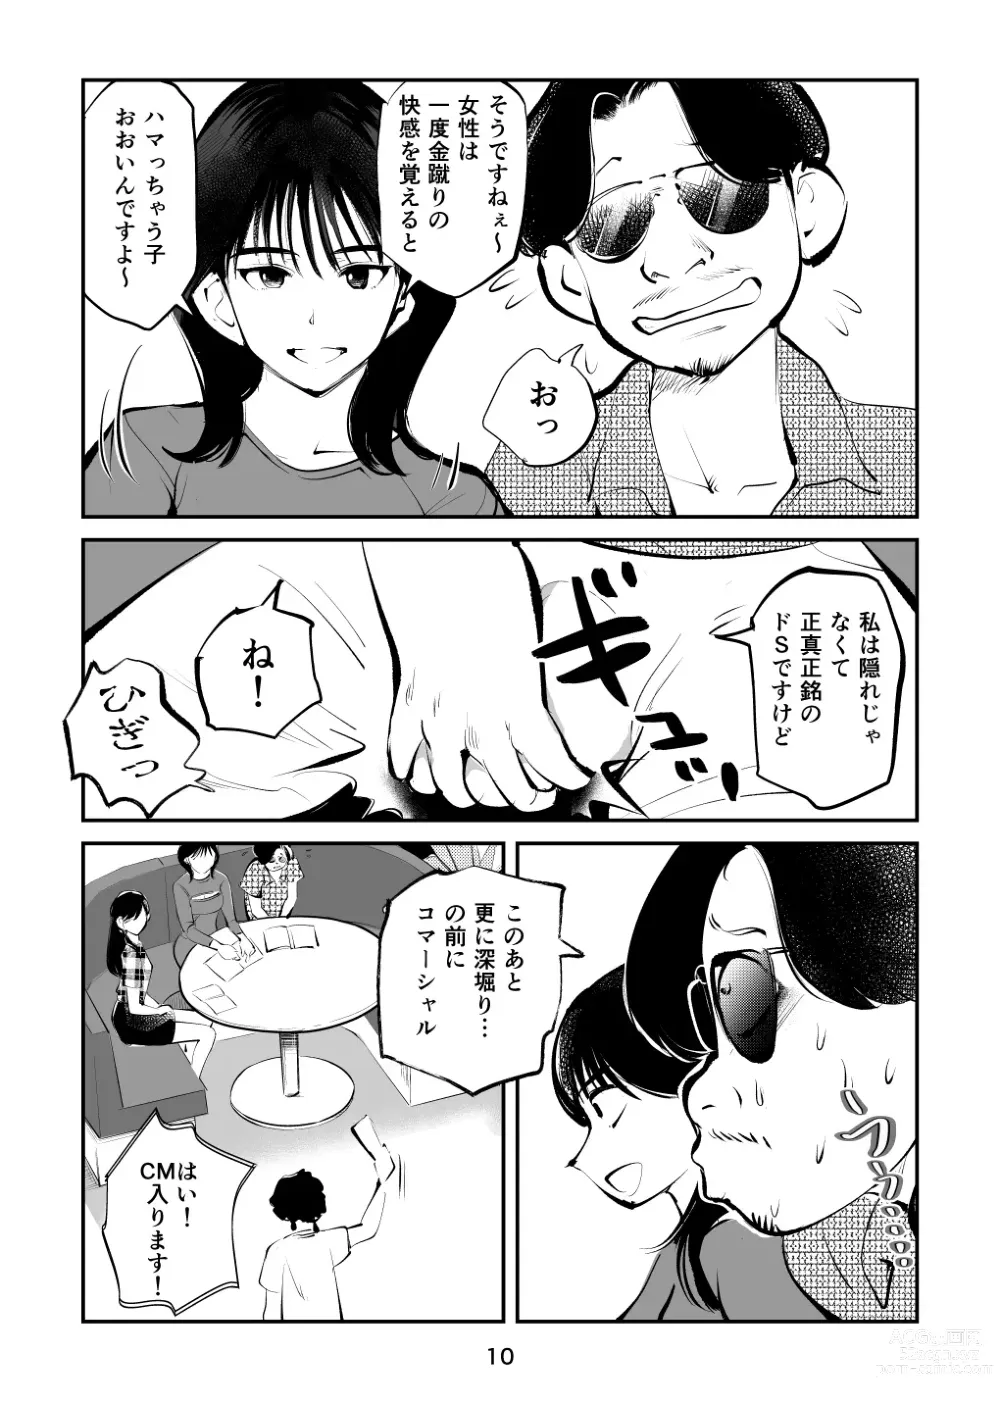 Page 10 of doujinshi Kintama o tsubushita joshi-ana